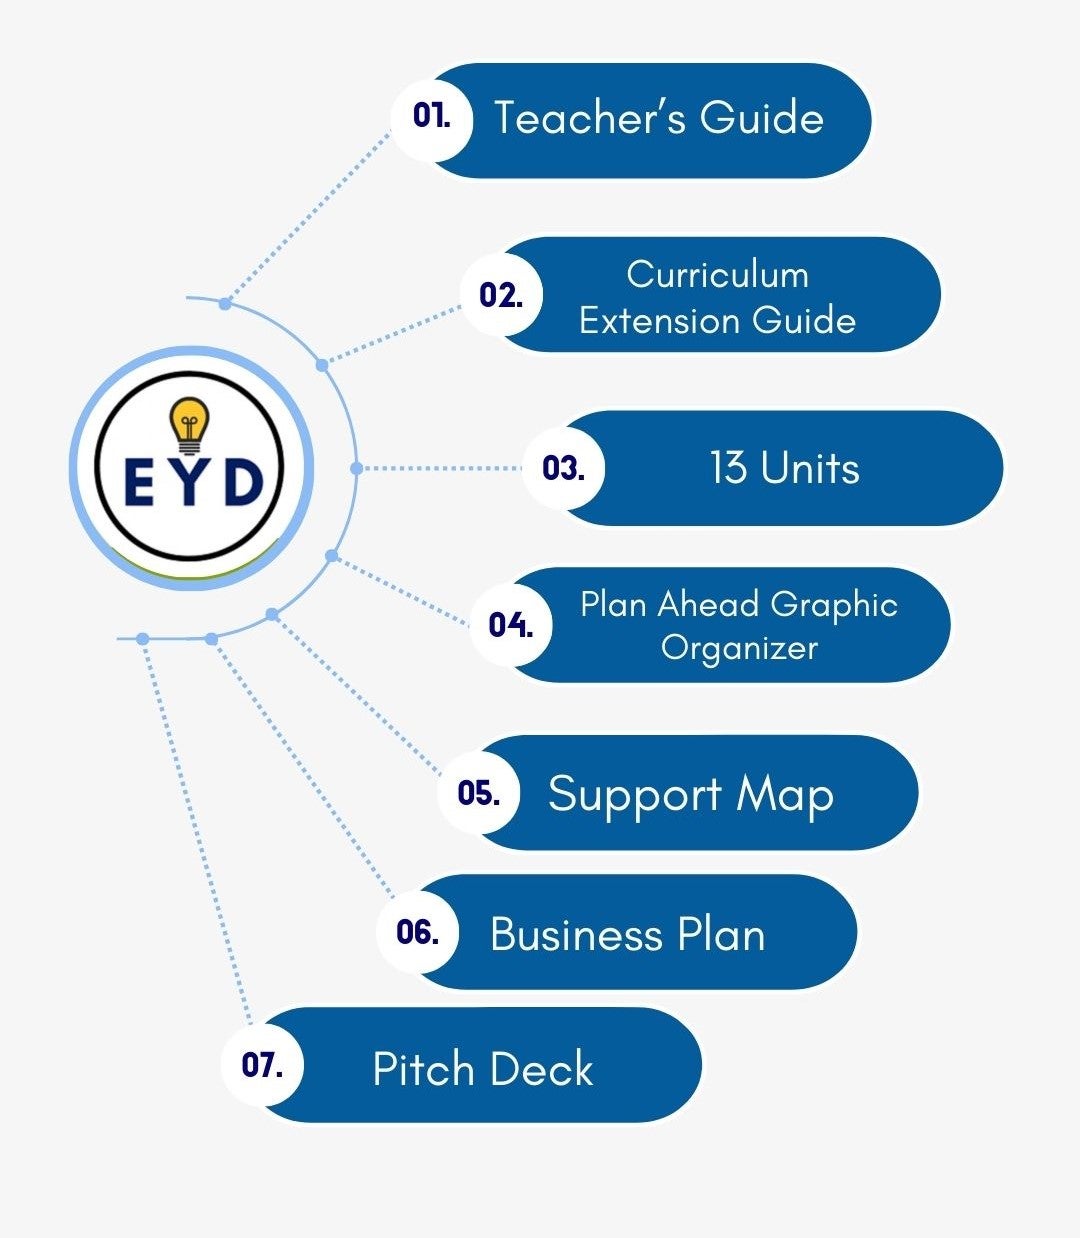 EYD website image